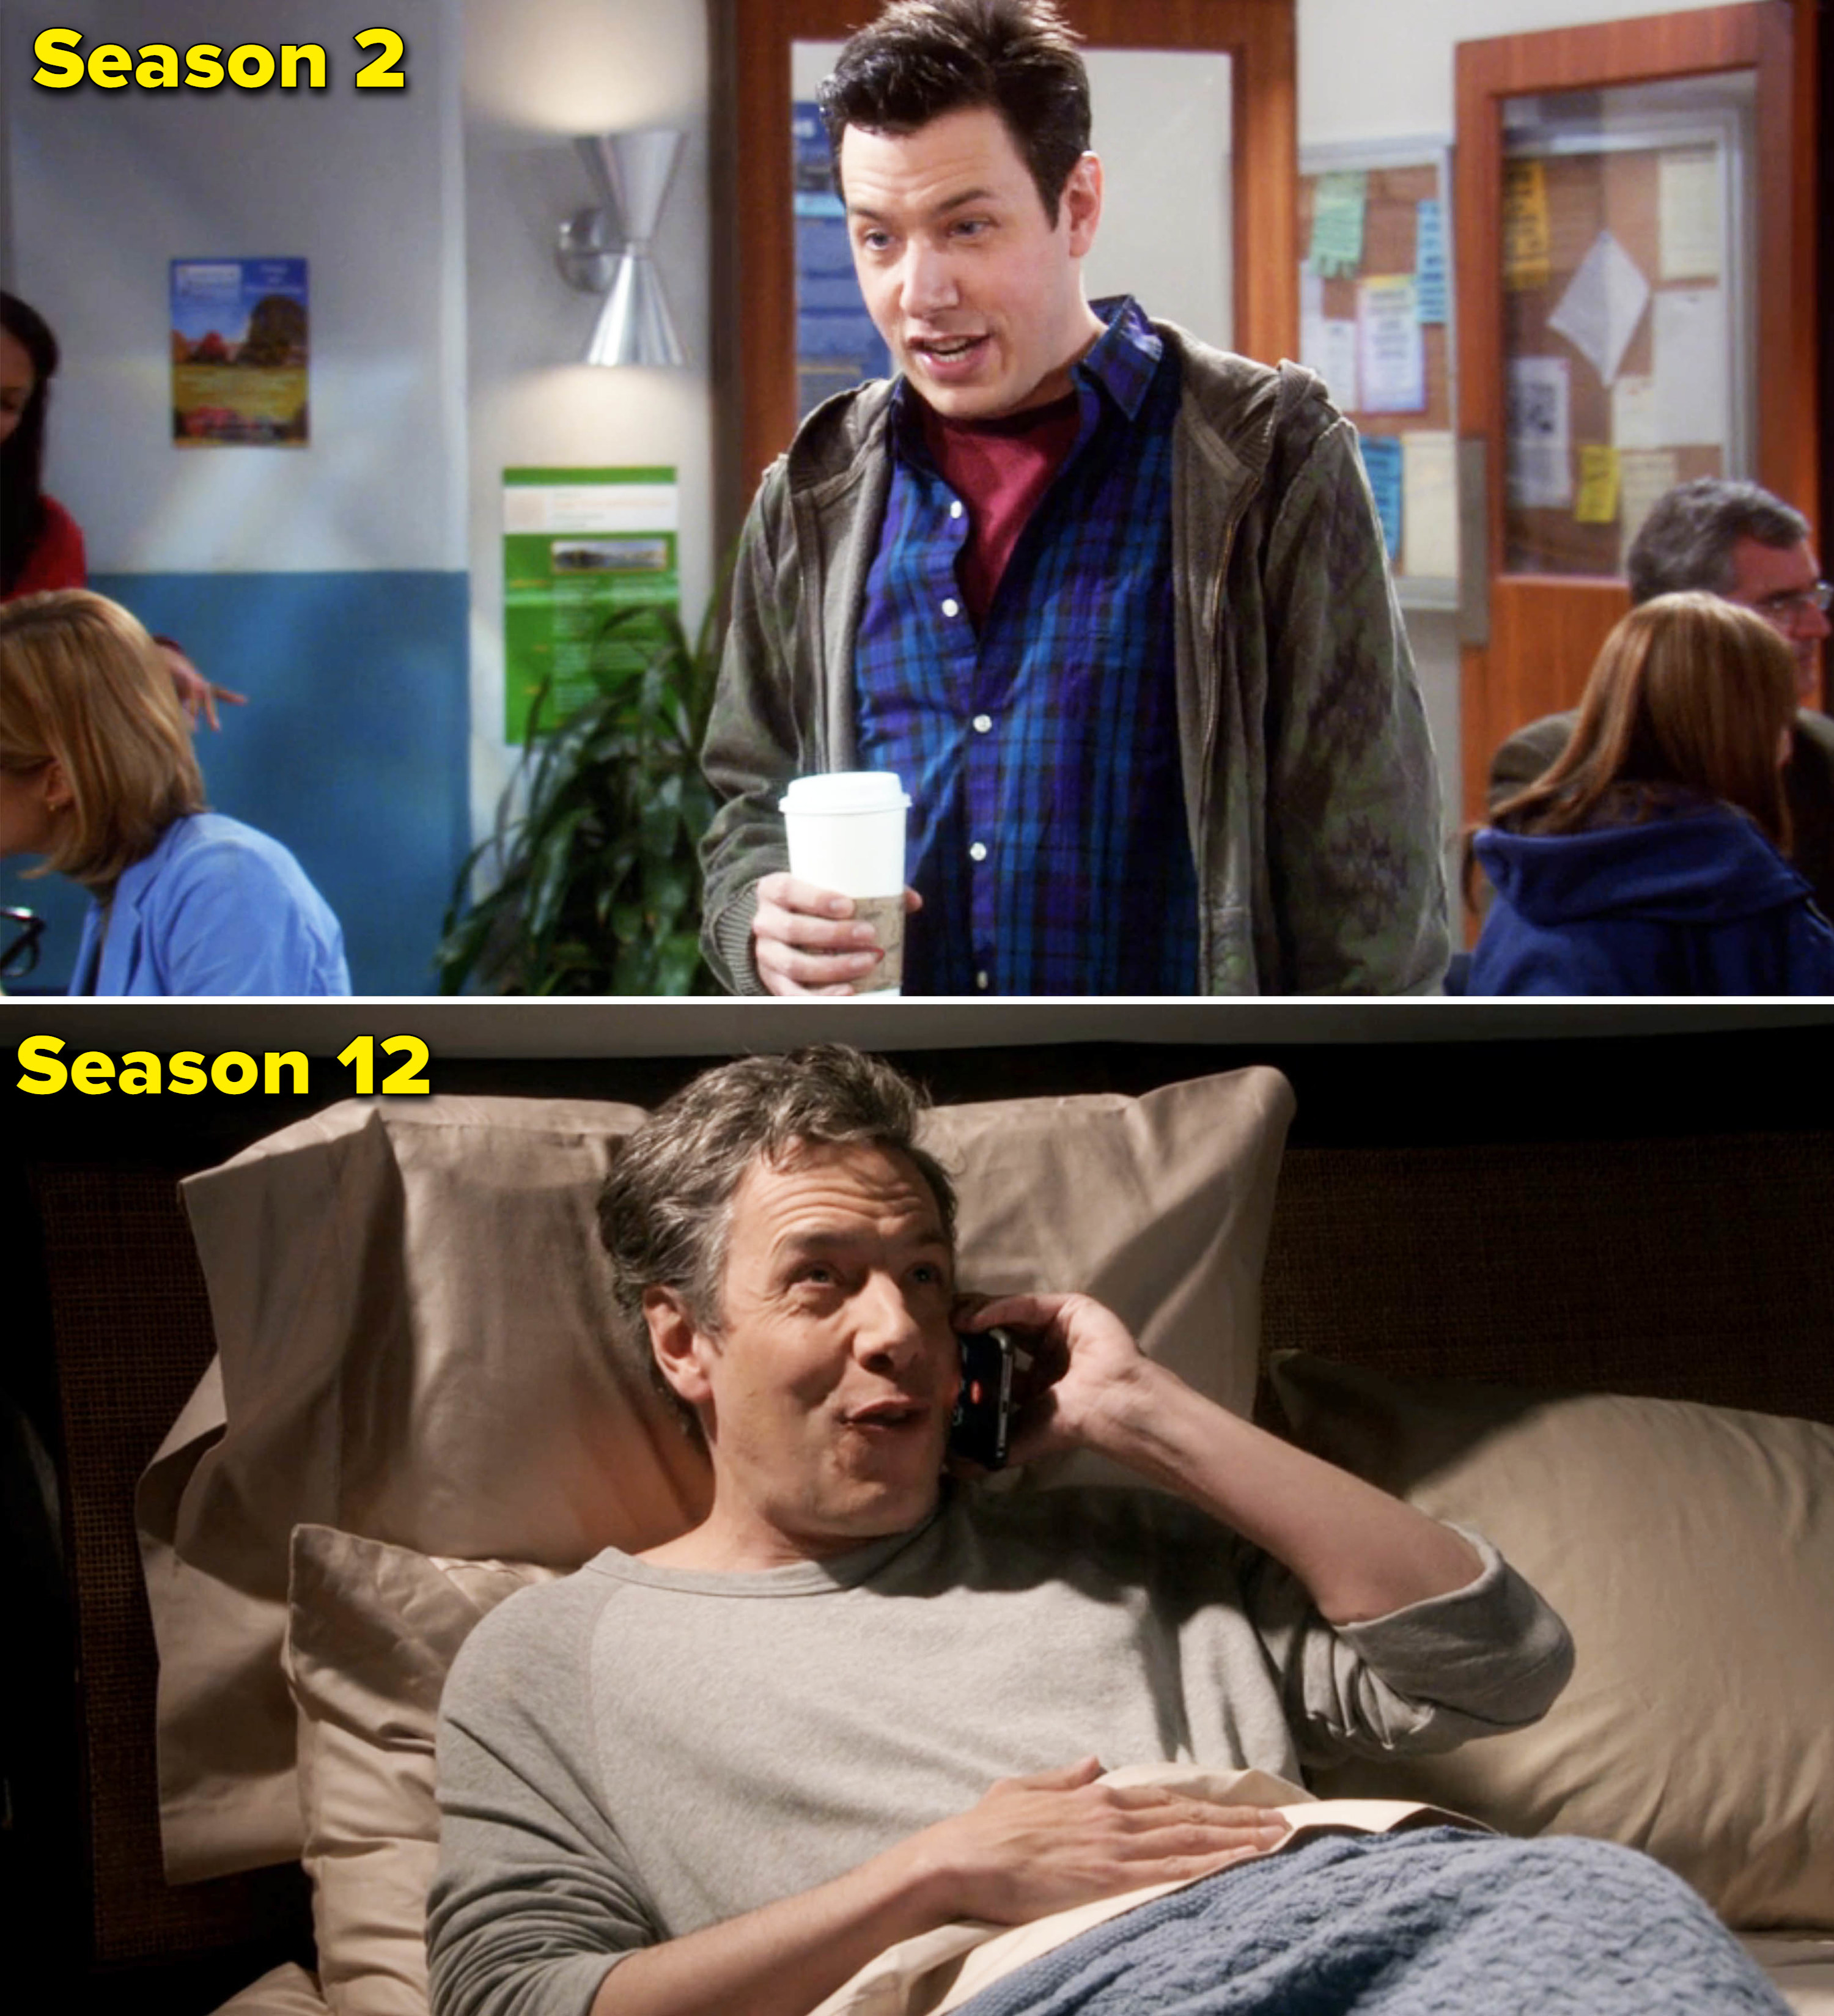 John in seasons 2 and 12